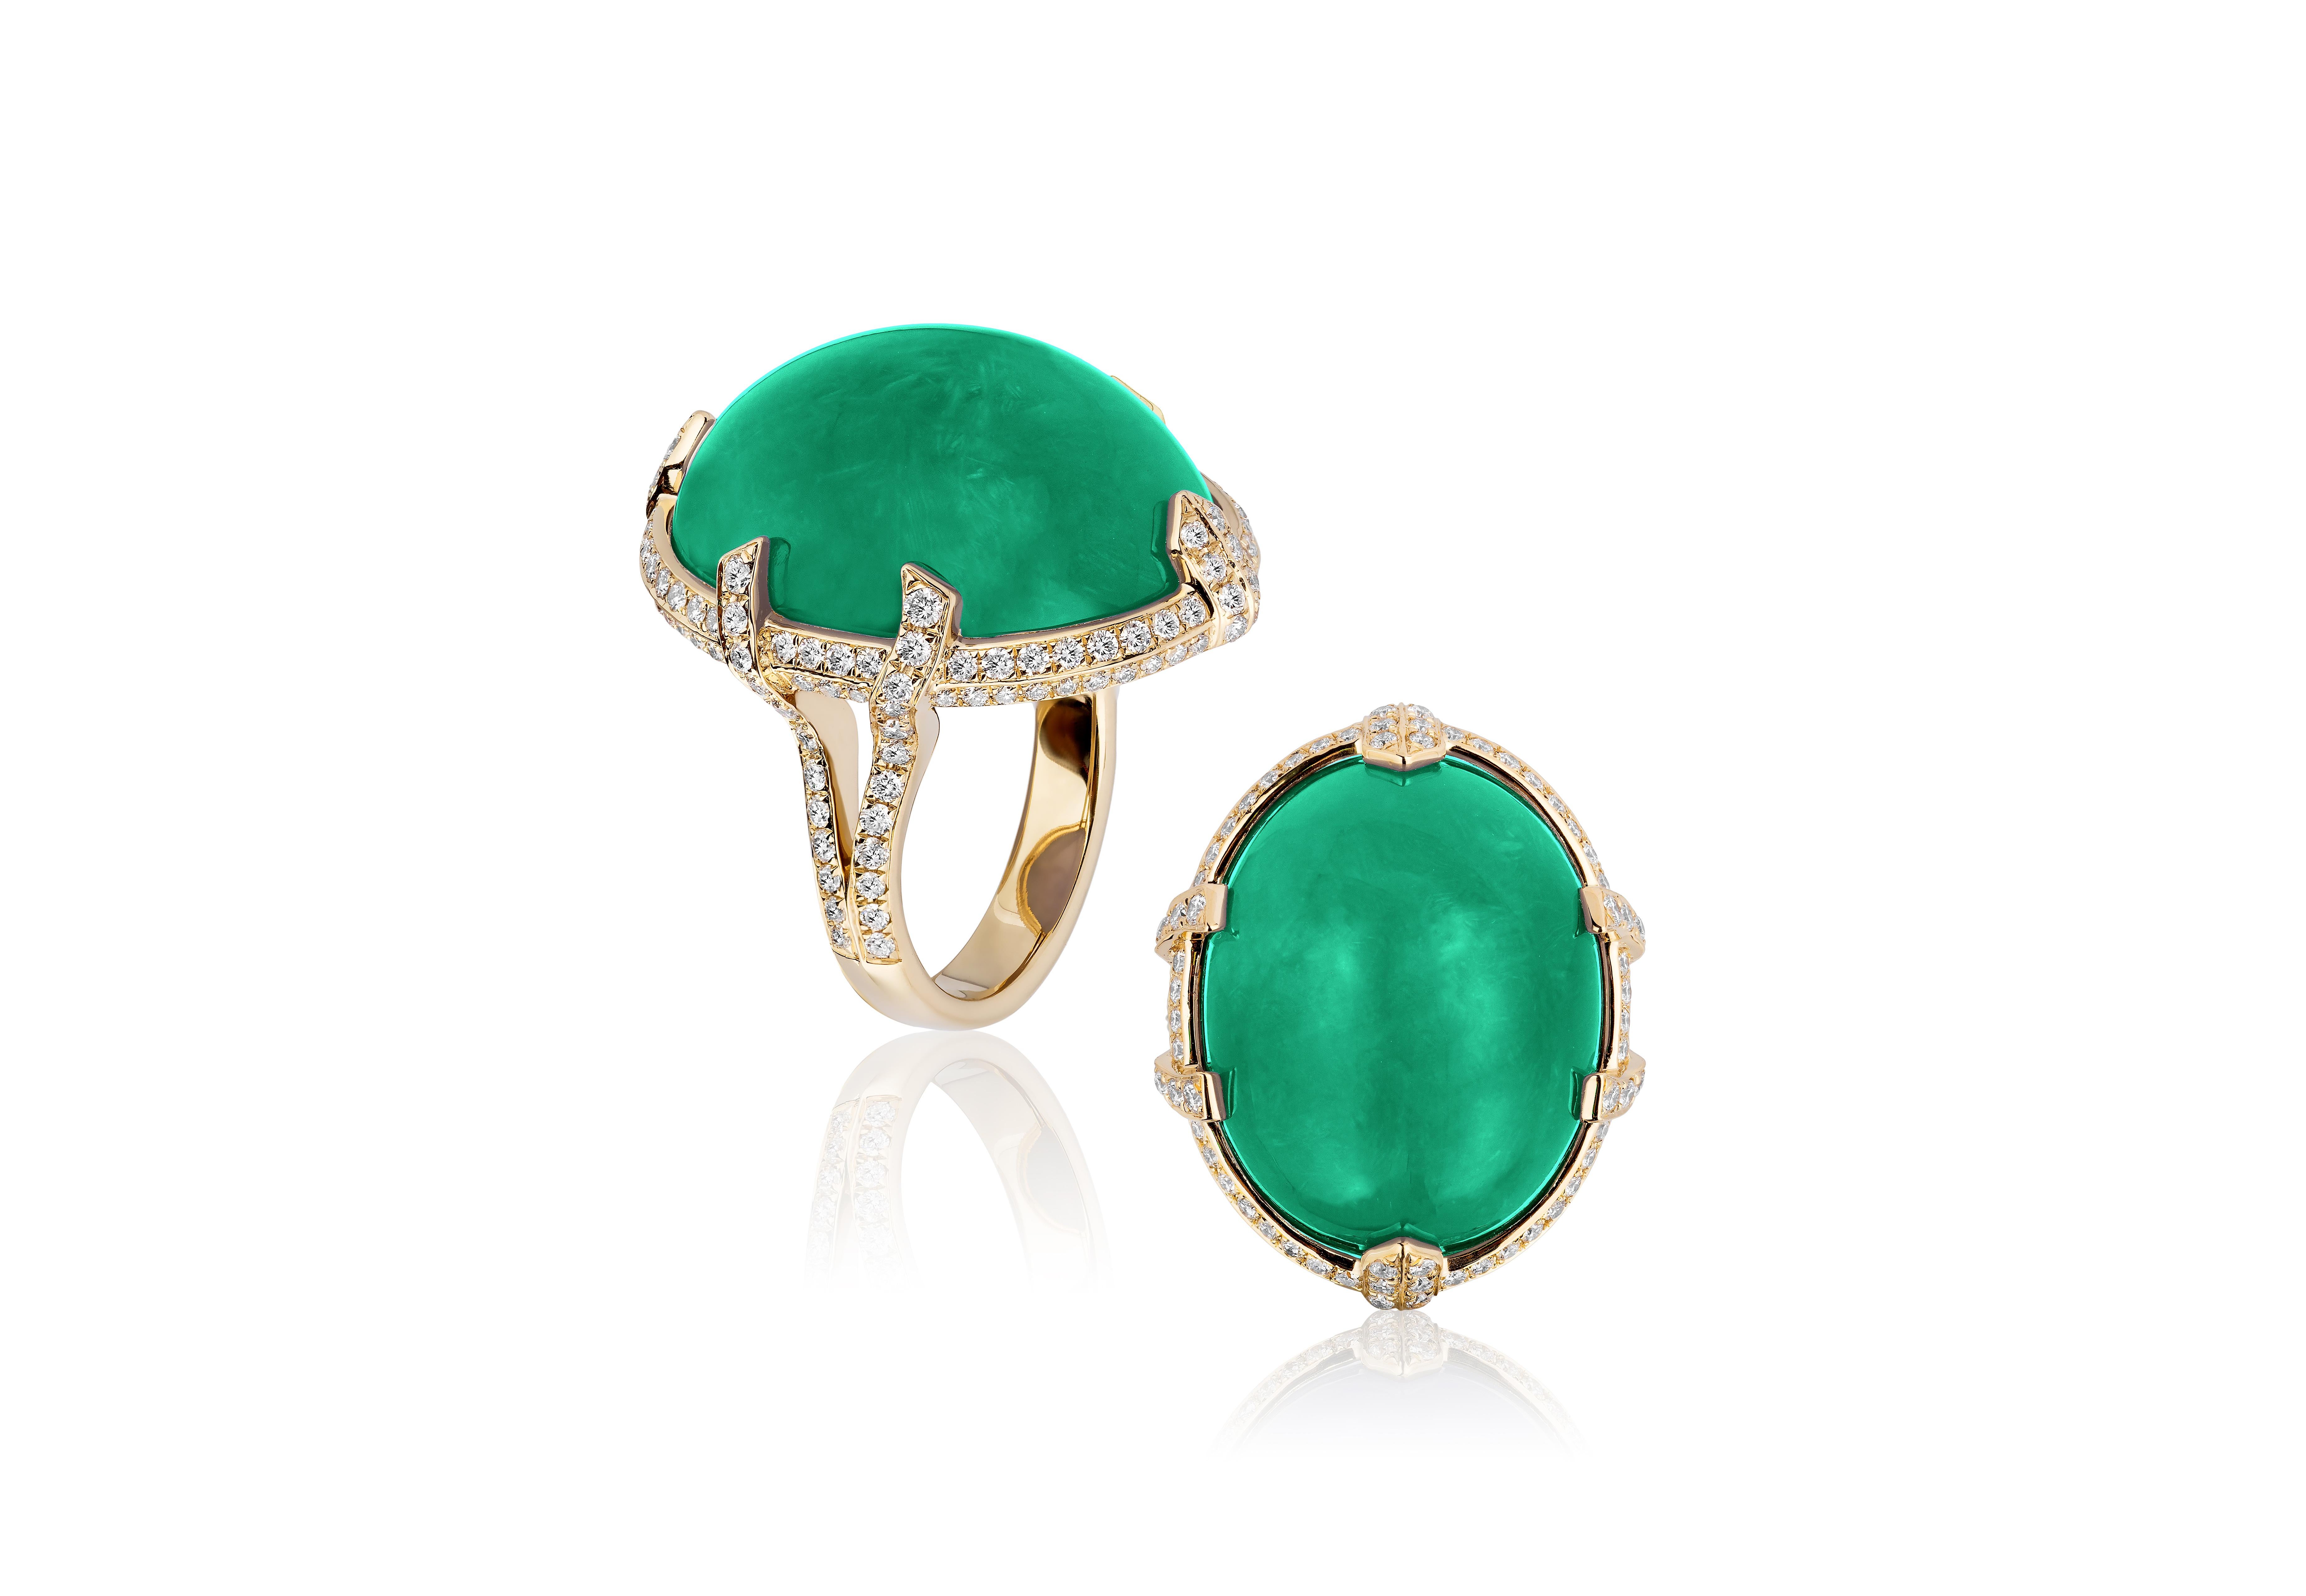 Contemporary Goshwara Large Oval Shape Emerald Ring with Diamonds